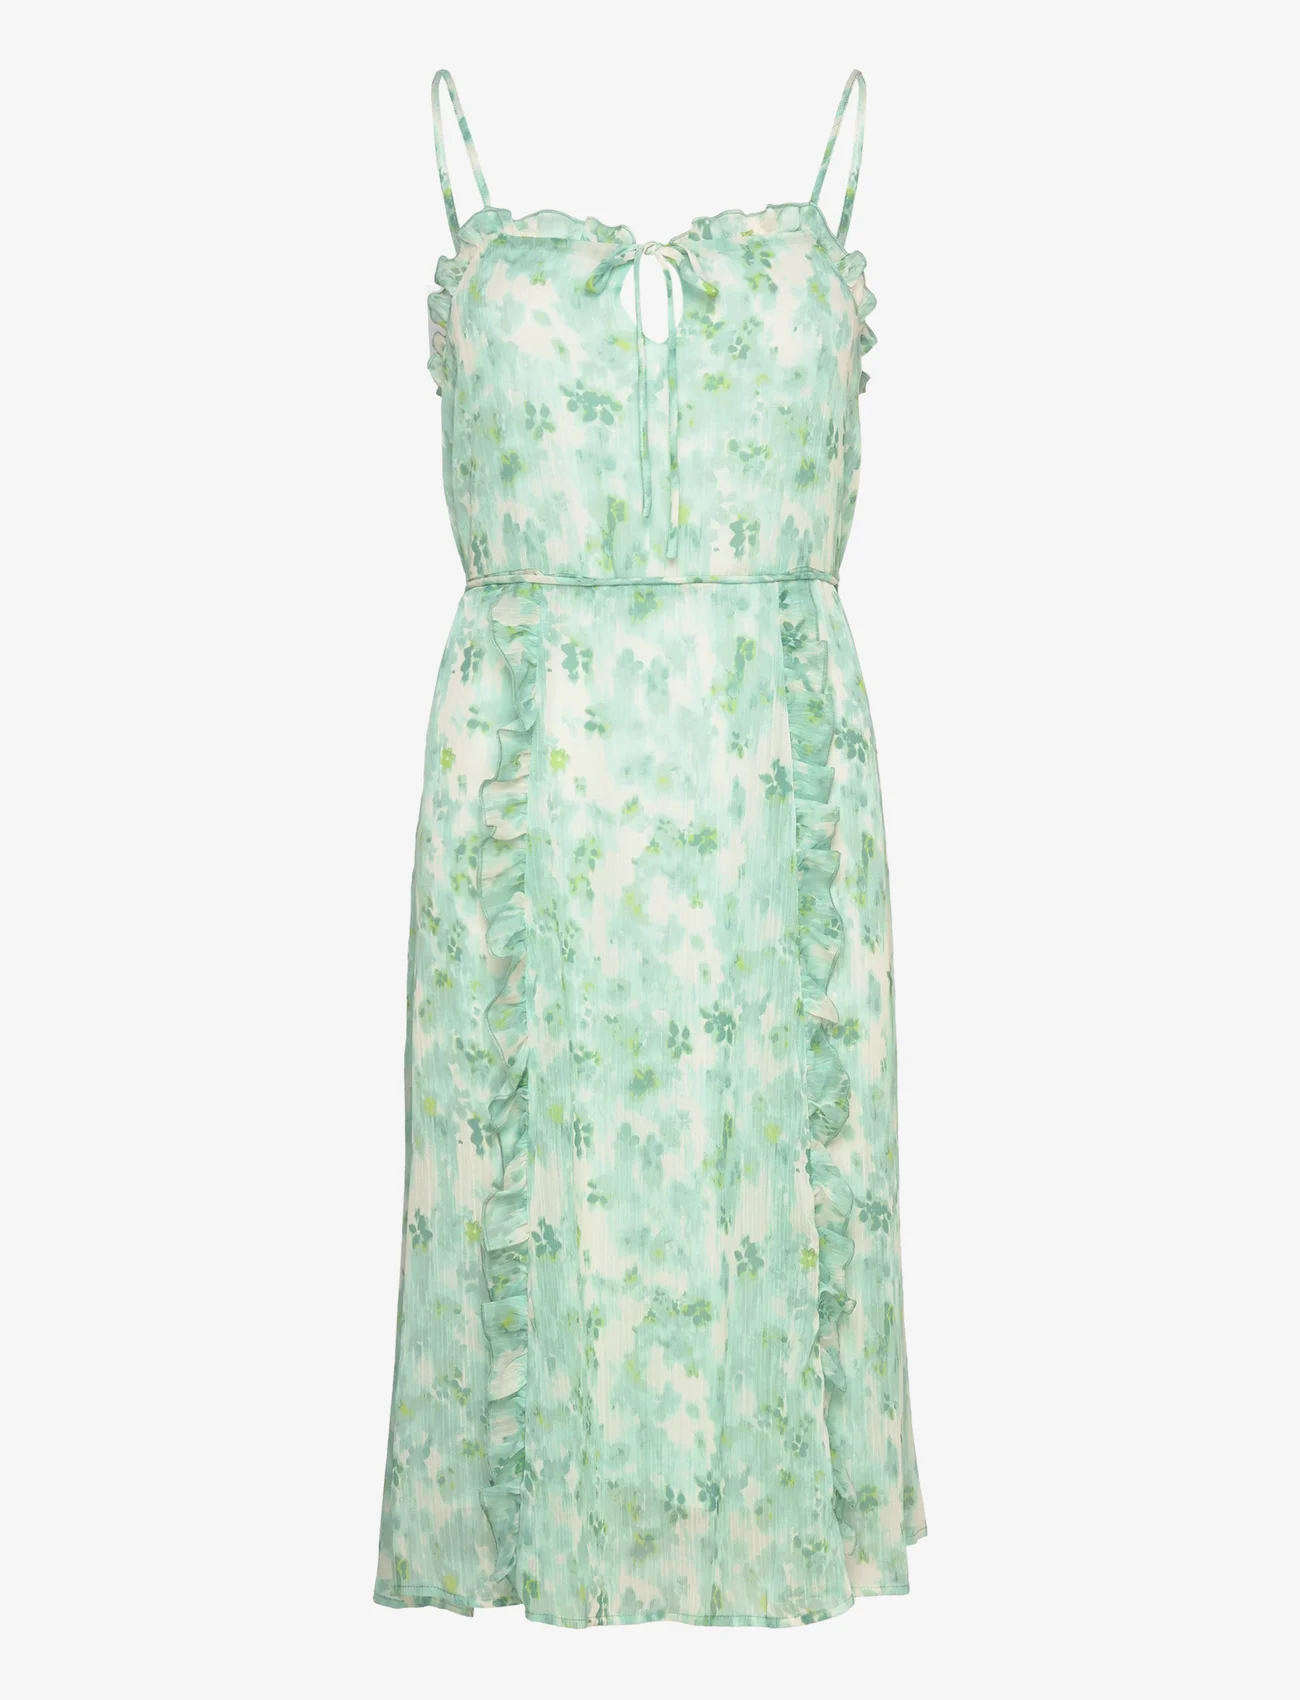 Rosemunde - Recycled chiffon strap dress - slip kjoler - big mint flower print - 0